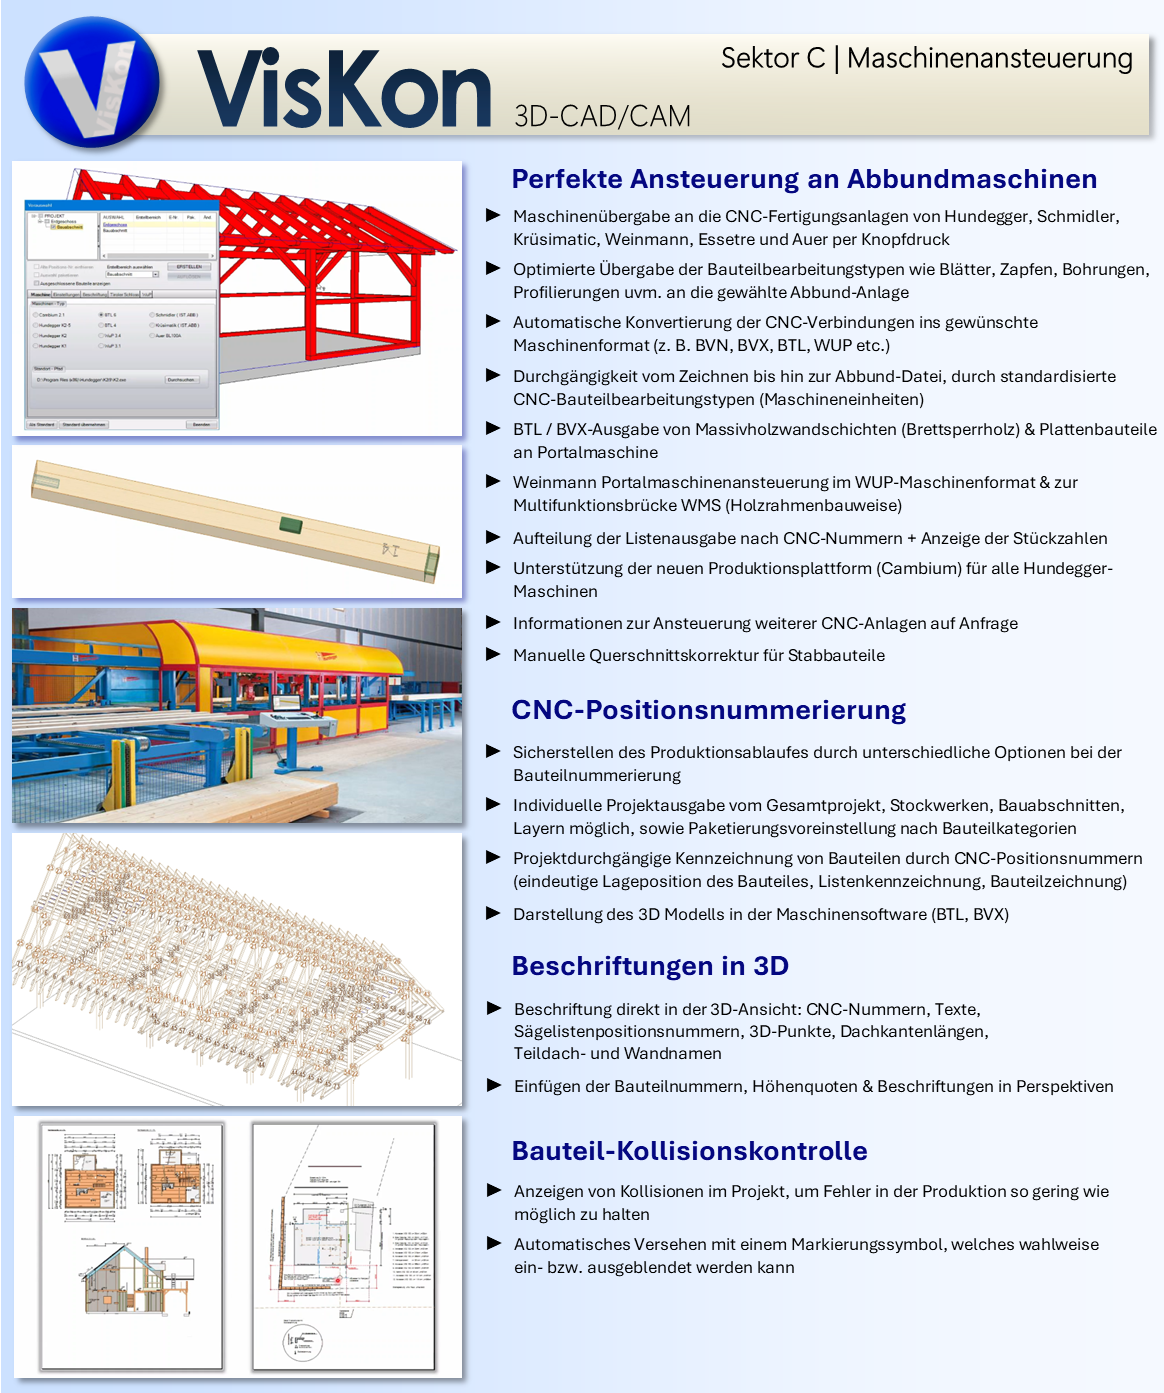 VISKON V17 3D-CAD/CAM - Sektor C (Maschinenansteuerung) | Zur Miete